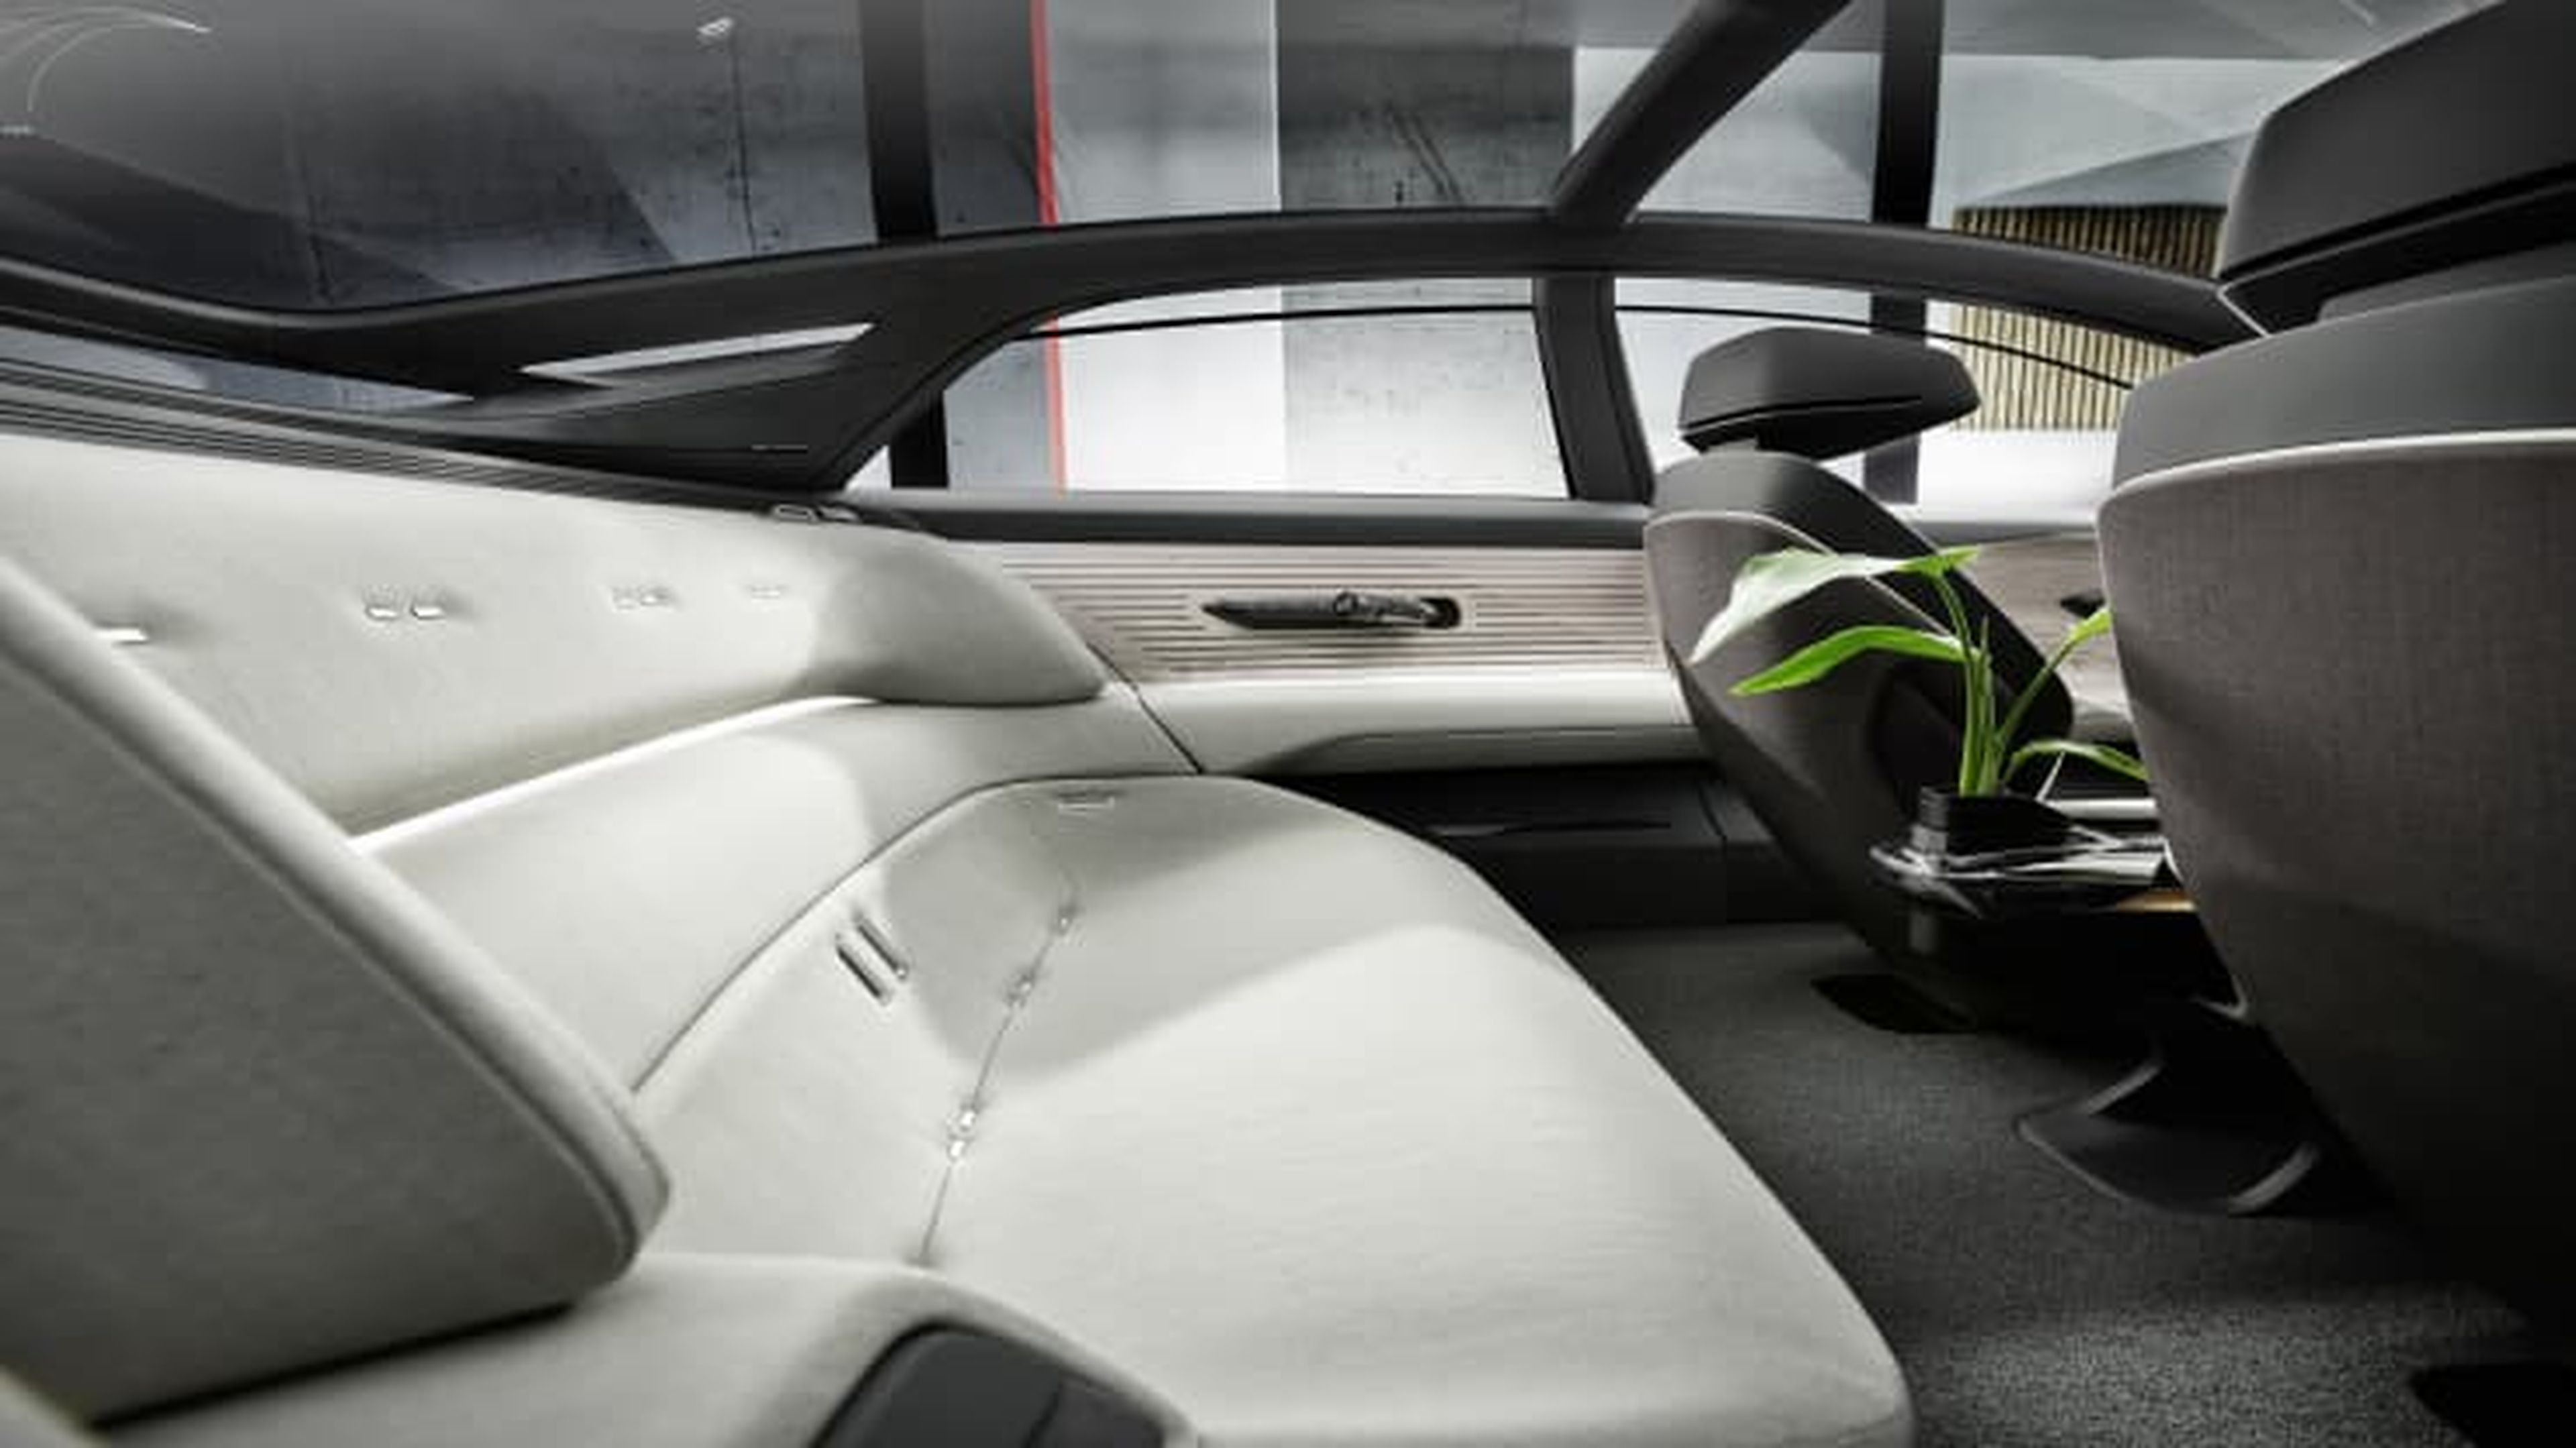 Audi presenta su nuevo prototipo de automóvil Grandsphere: un "jet privado para la carretera" diseñado para la conducción autónoma